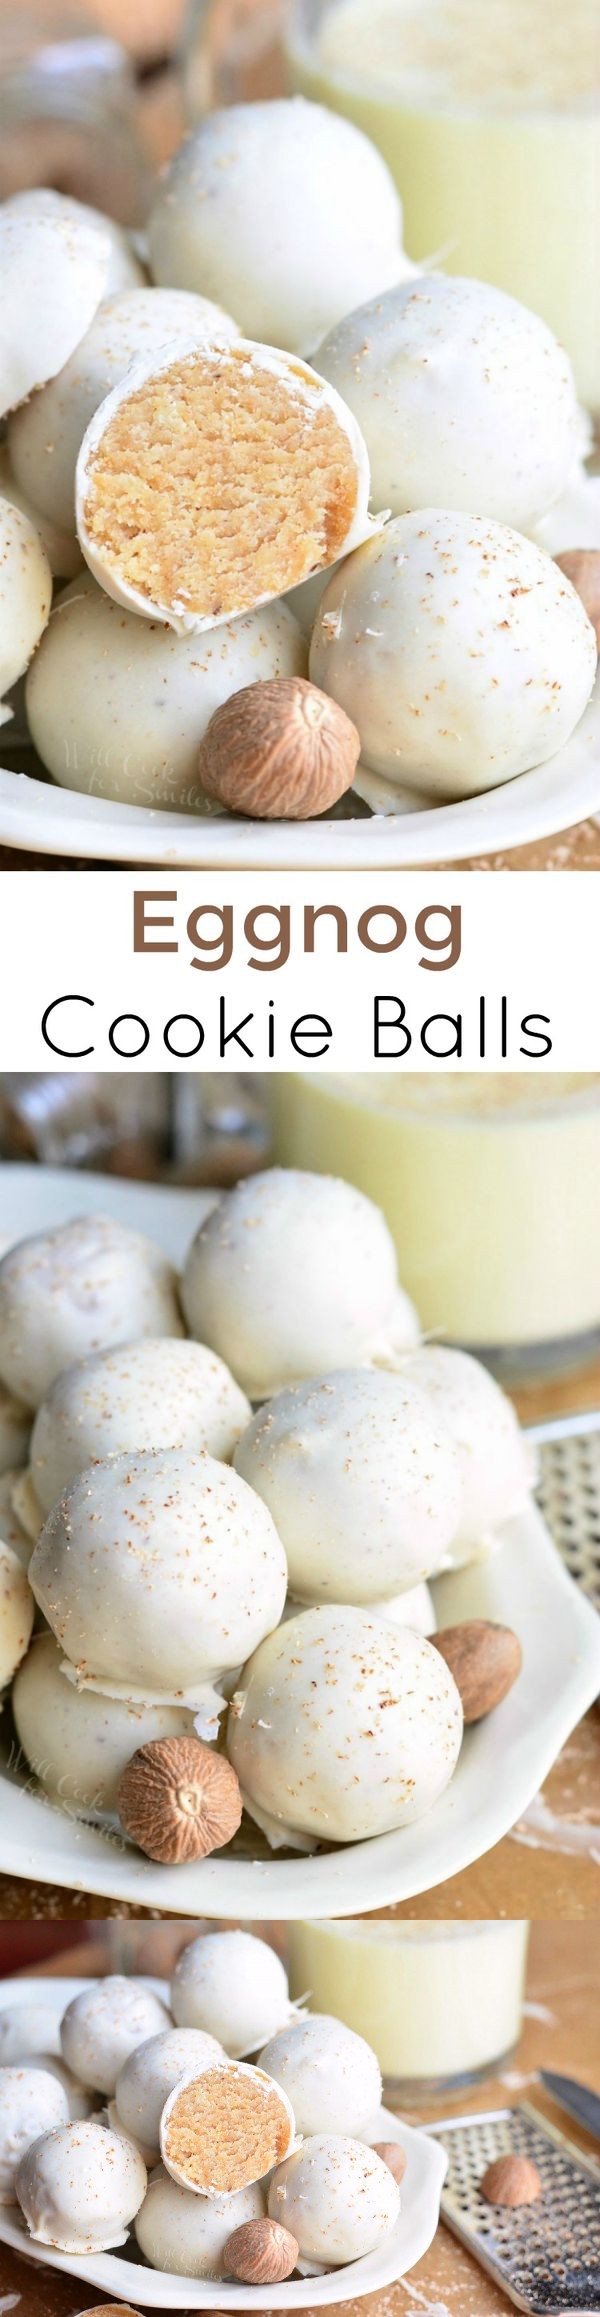 Eggnog Cookie Balls